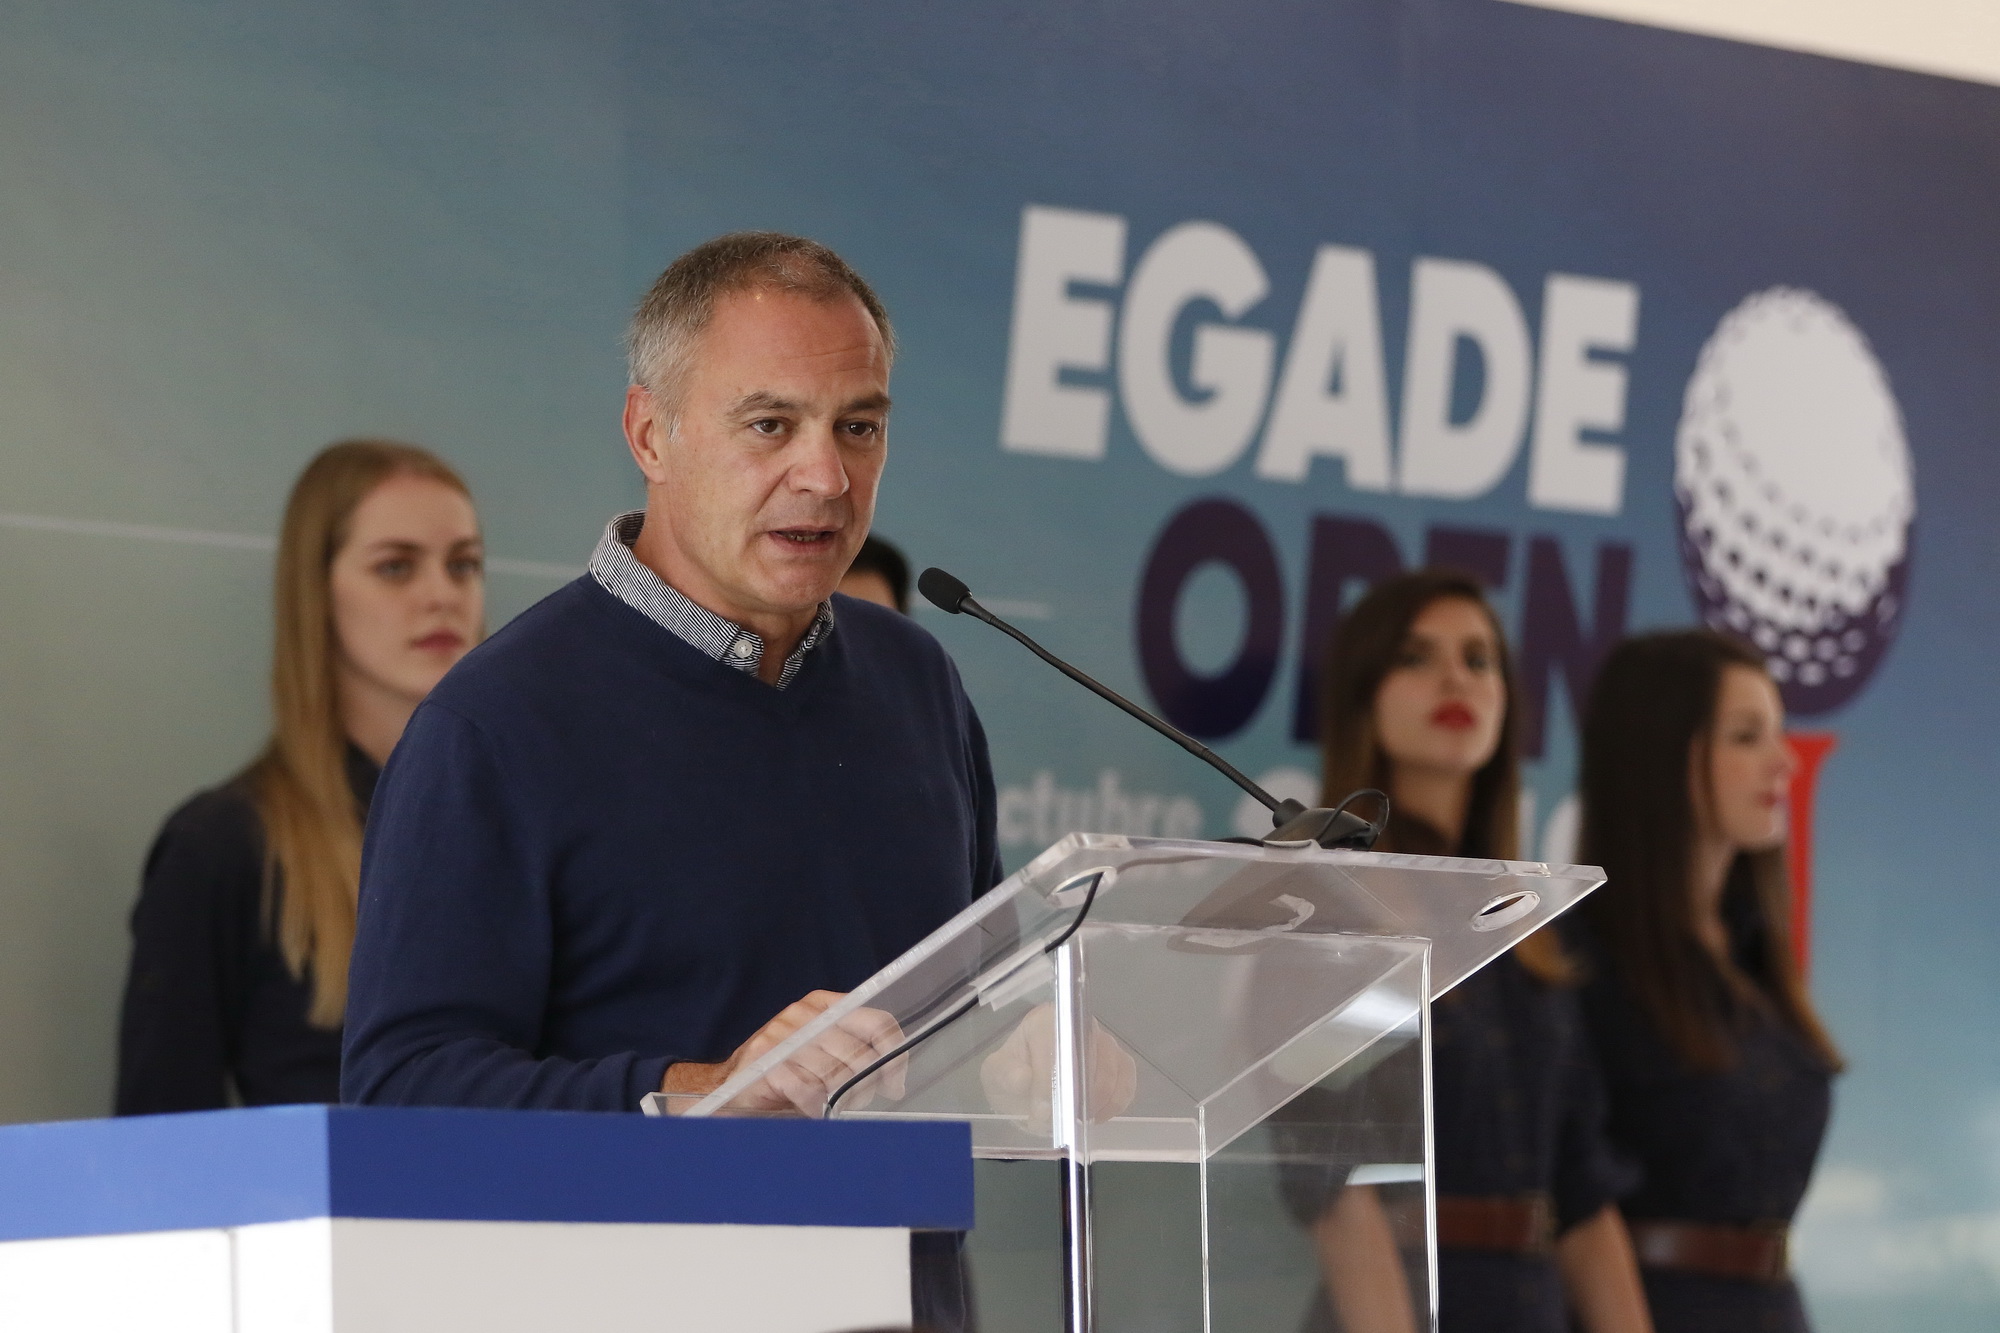 EGADE Open 2018